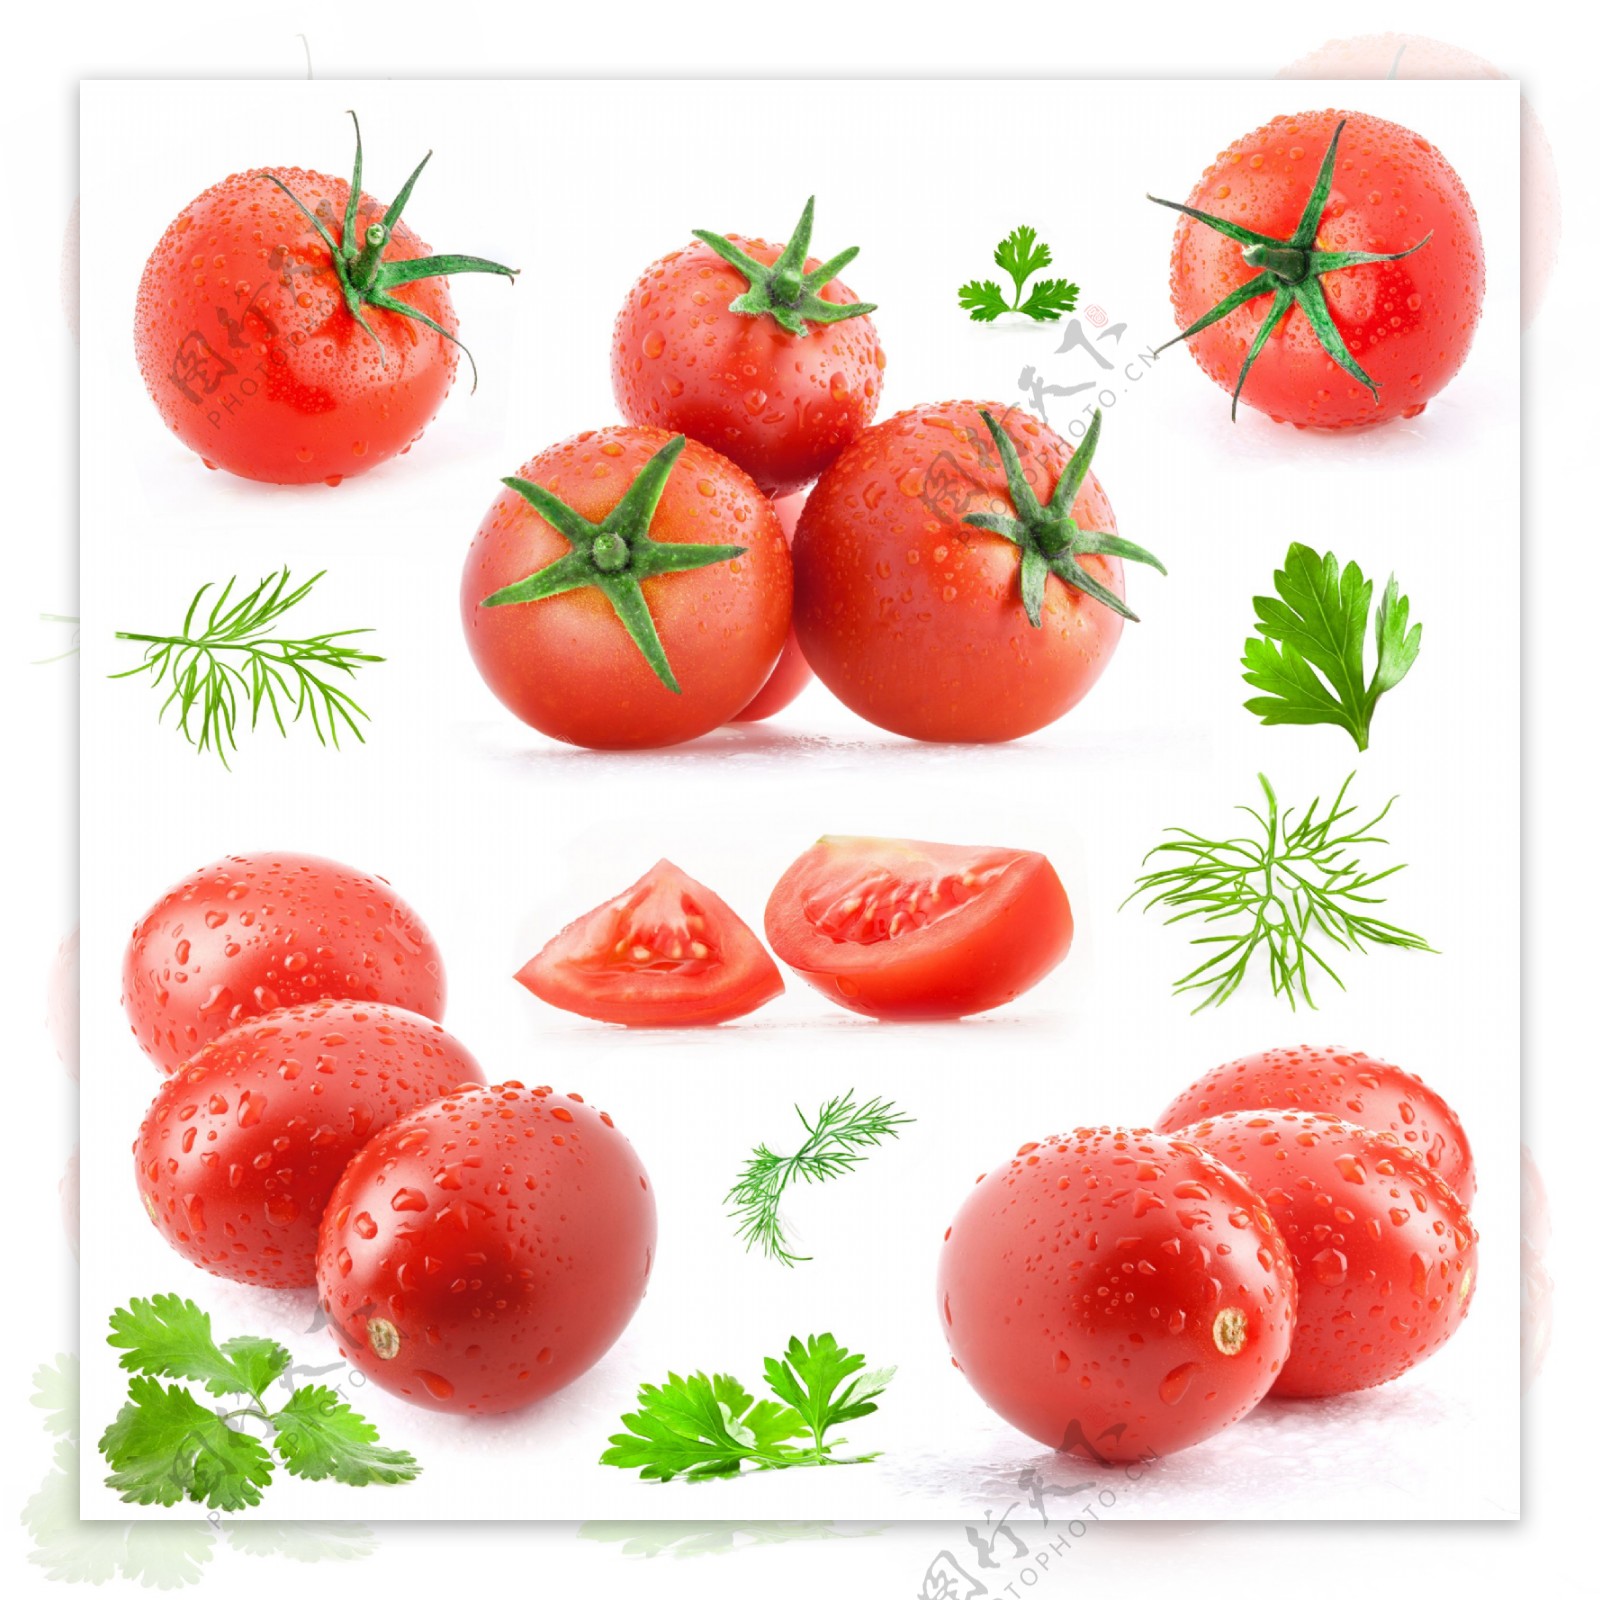 西红柿和茴香叶样式大集合